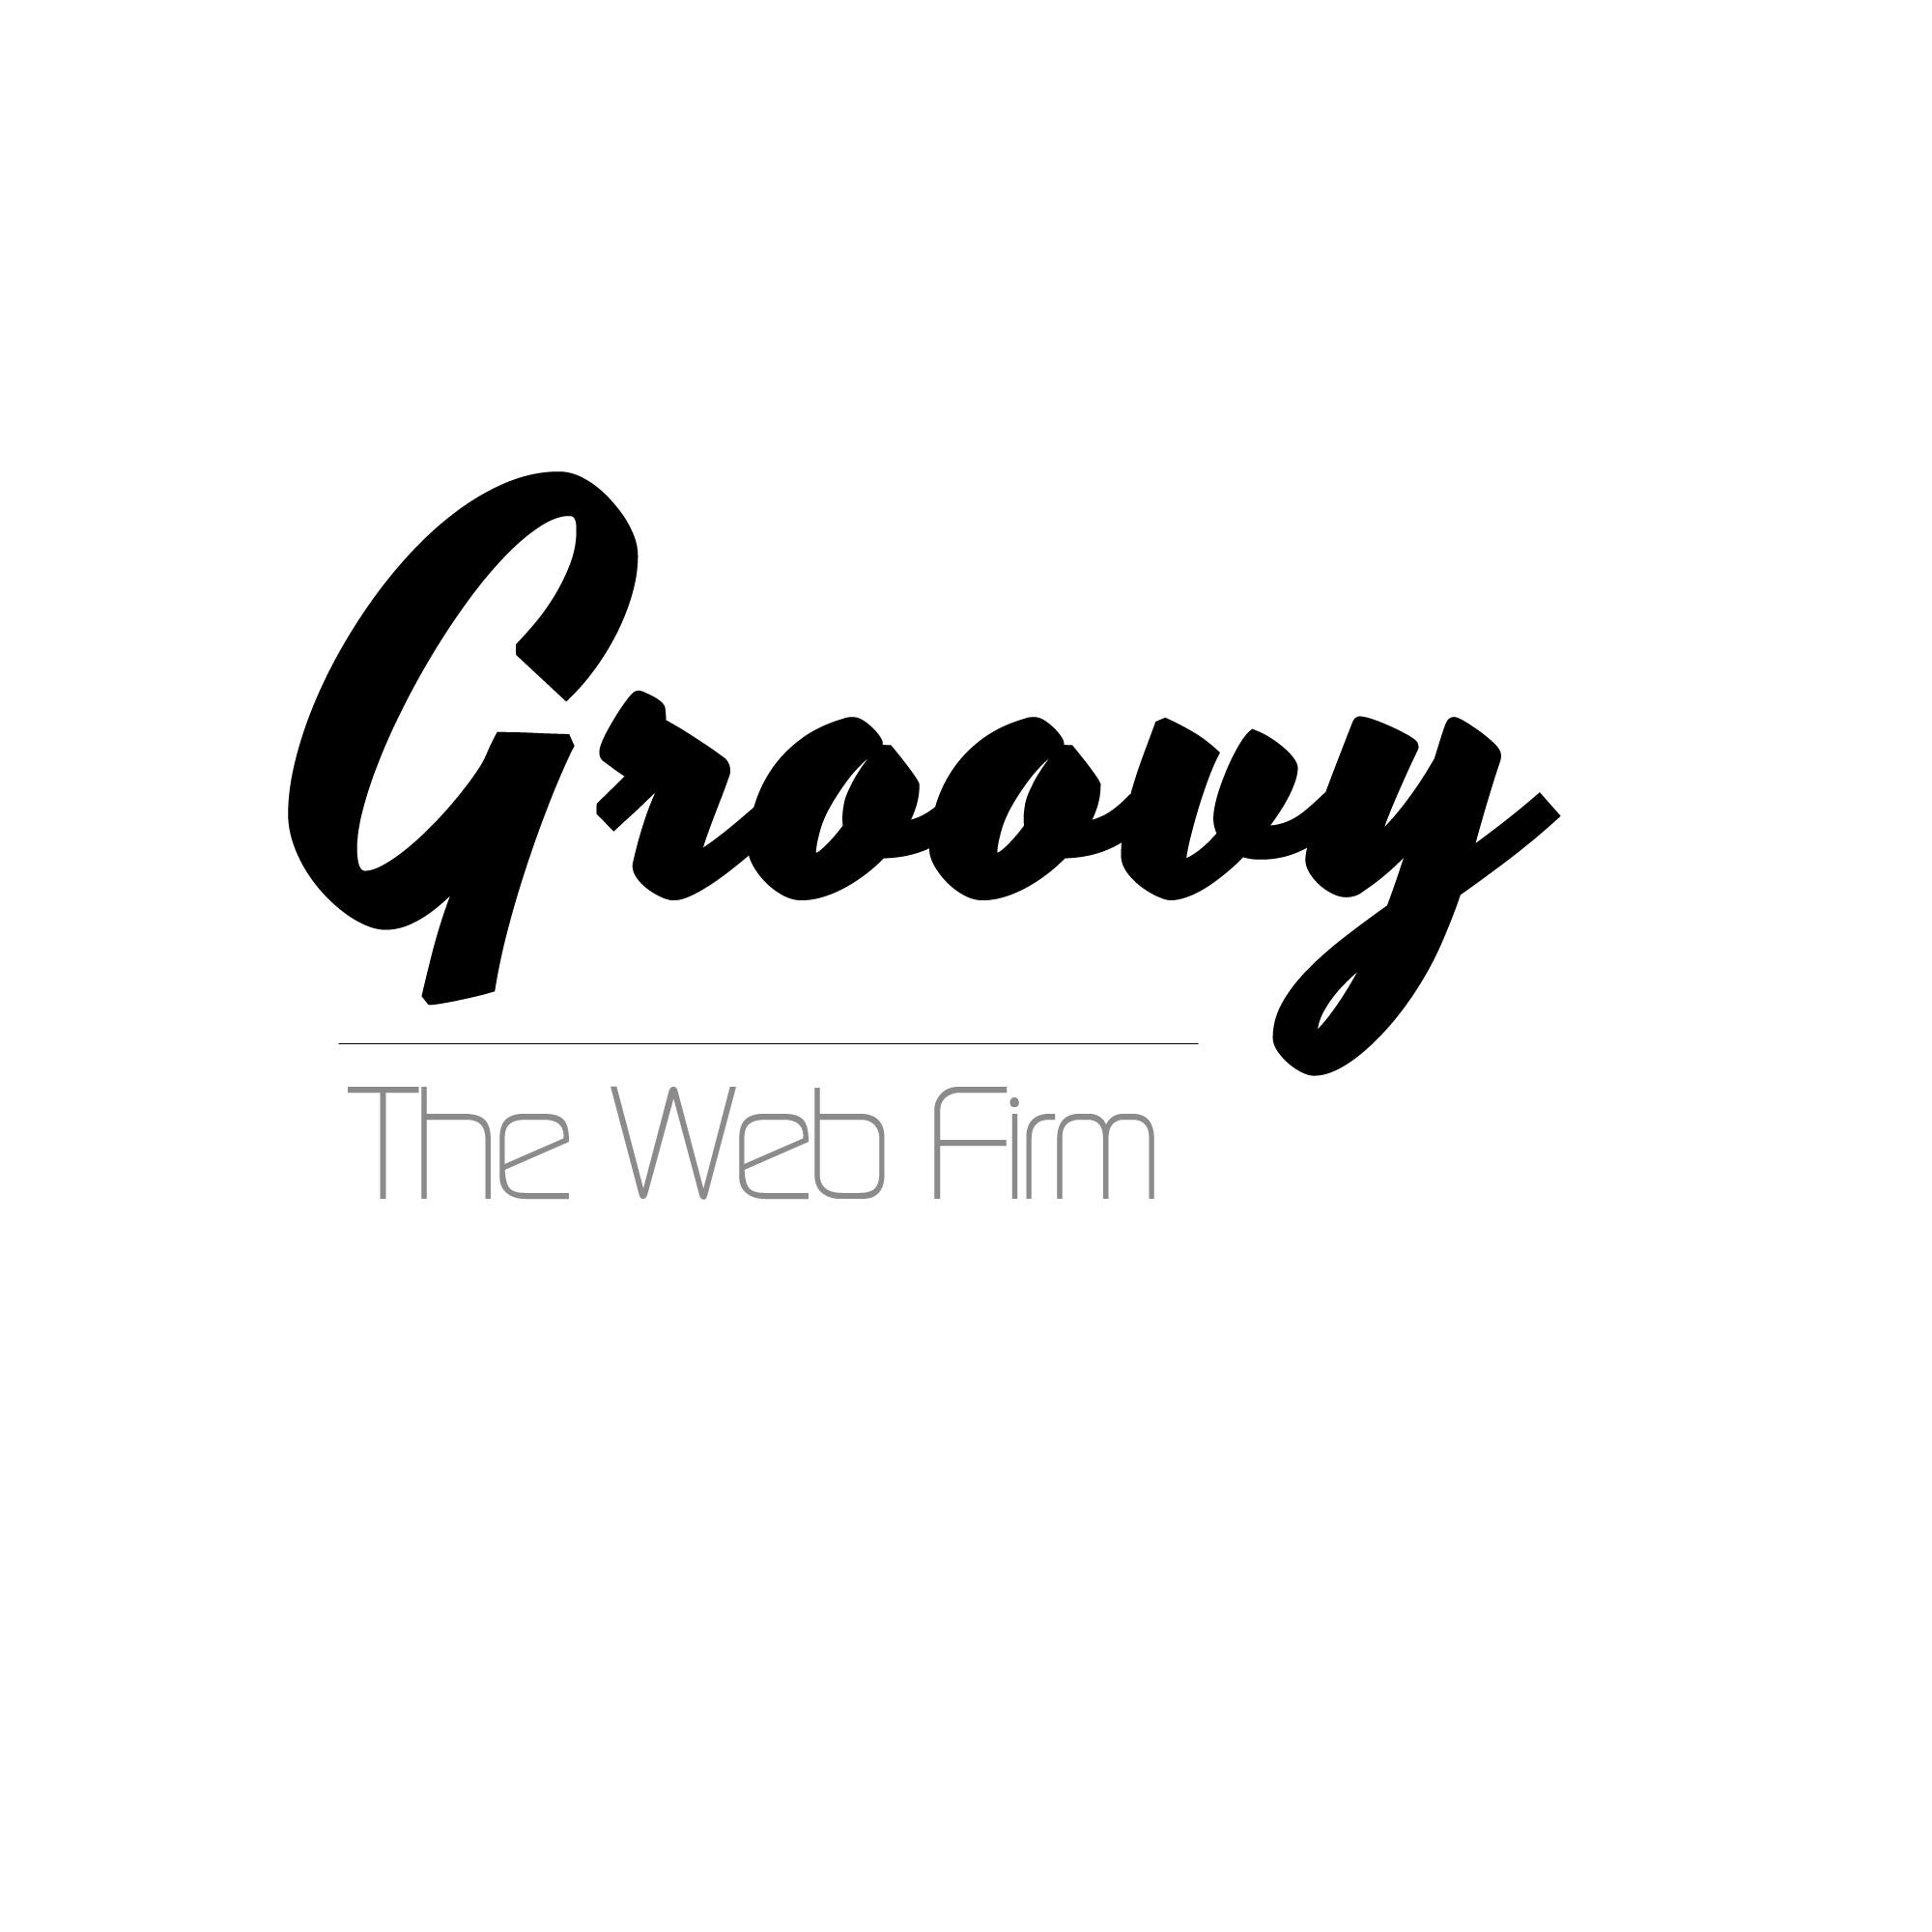 Groovyweb